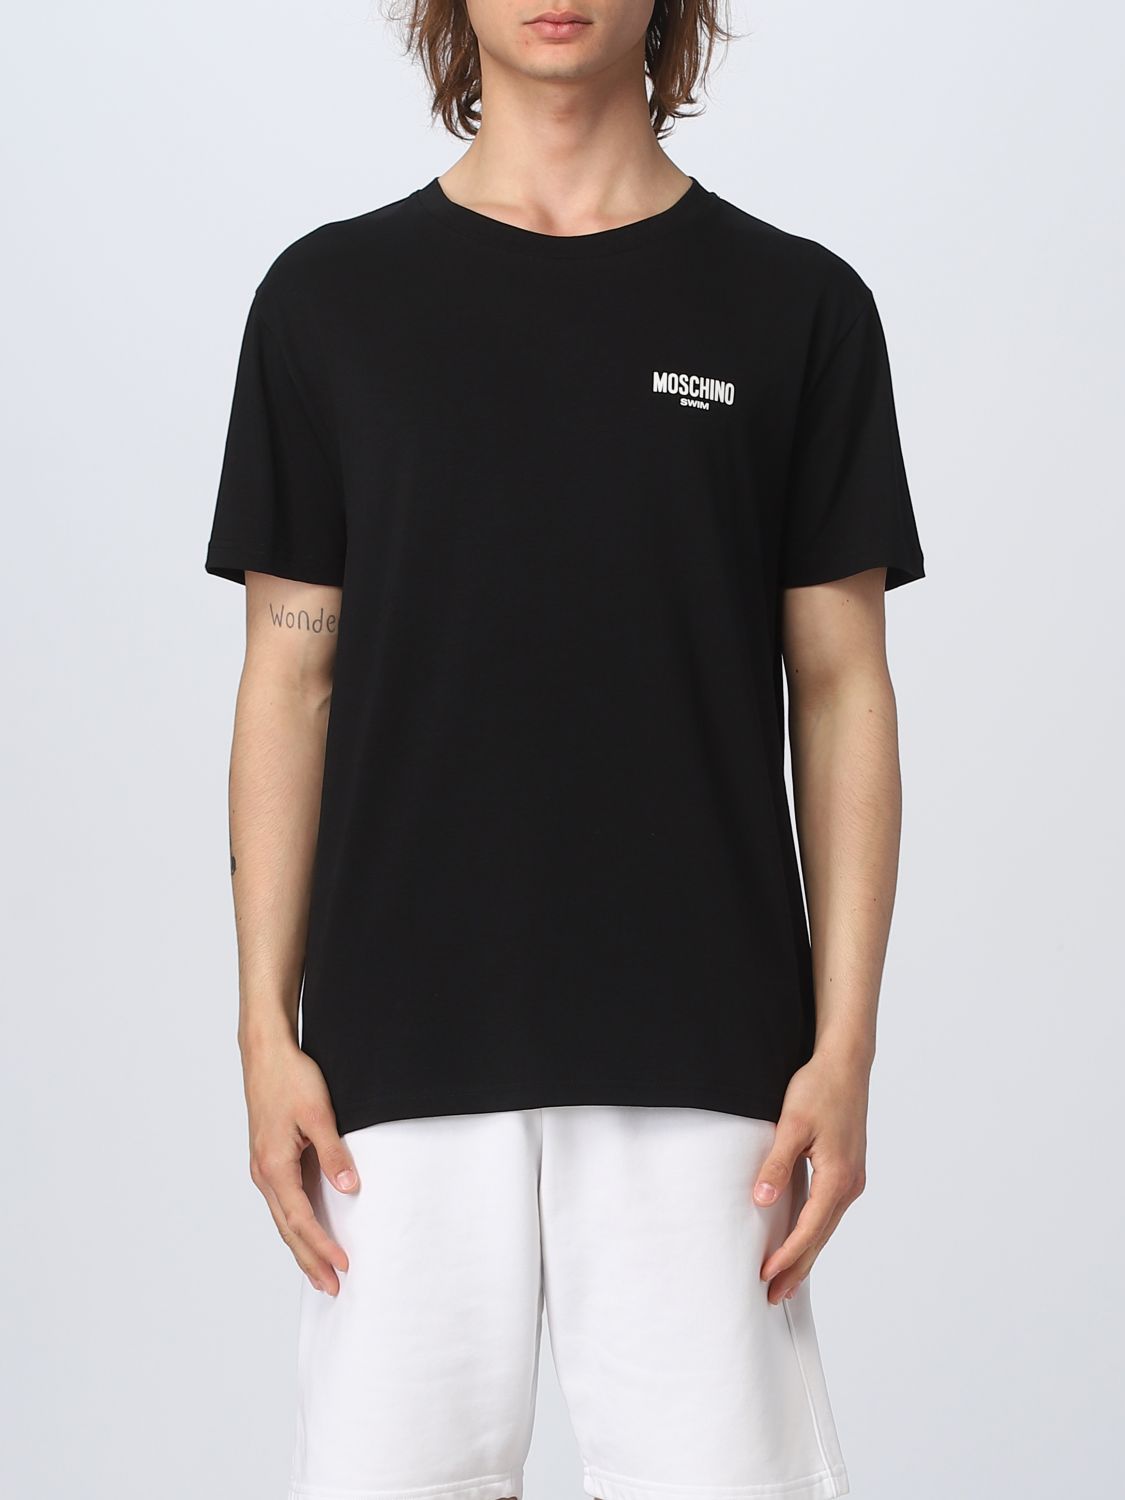 MOSCHINO SWIM: t-shirt for man - Black | Moschino Swim t-shirt 07819411 ...